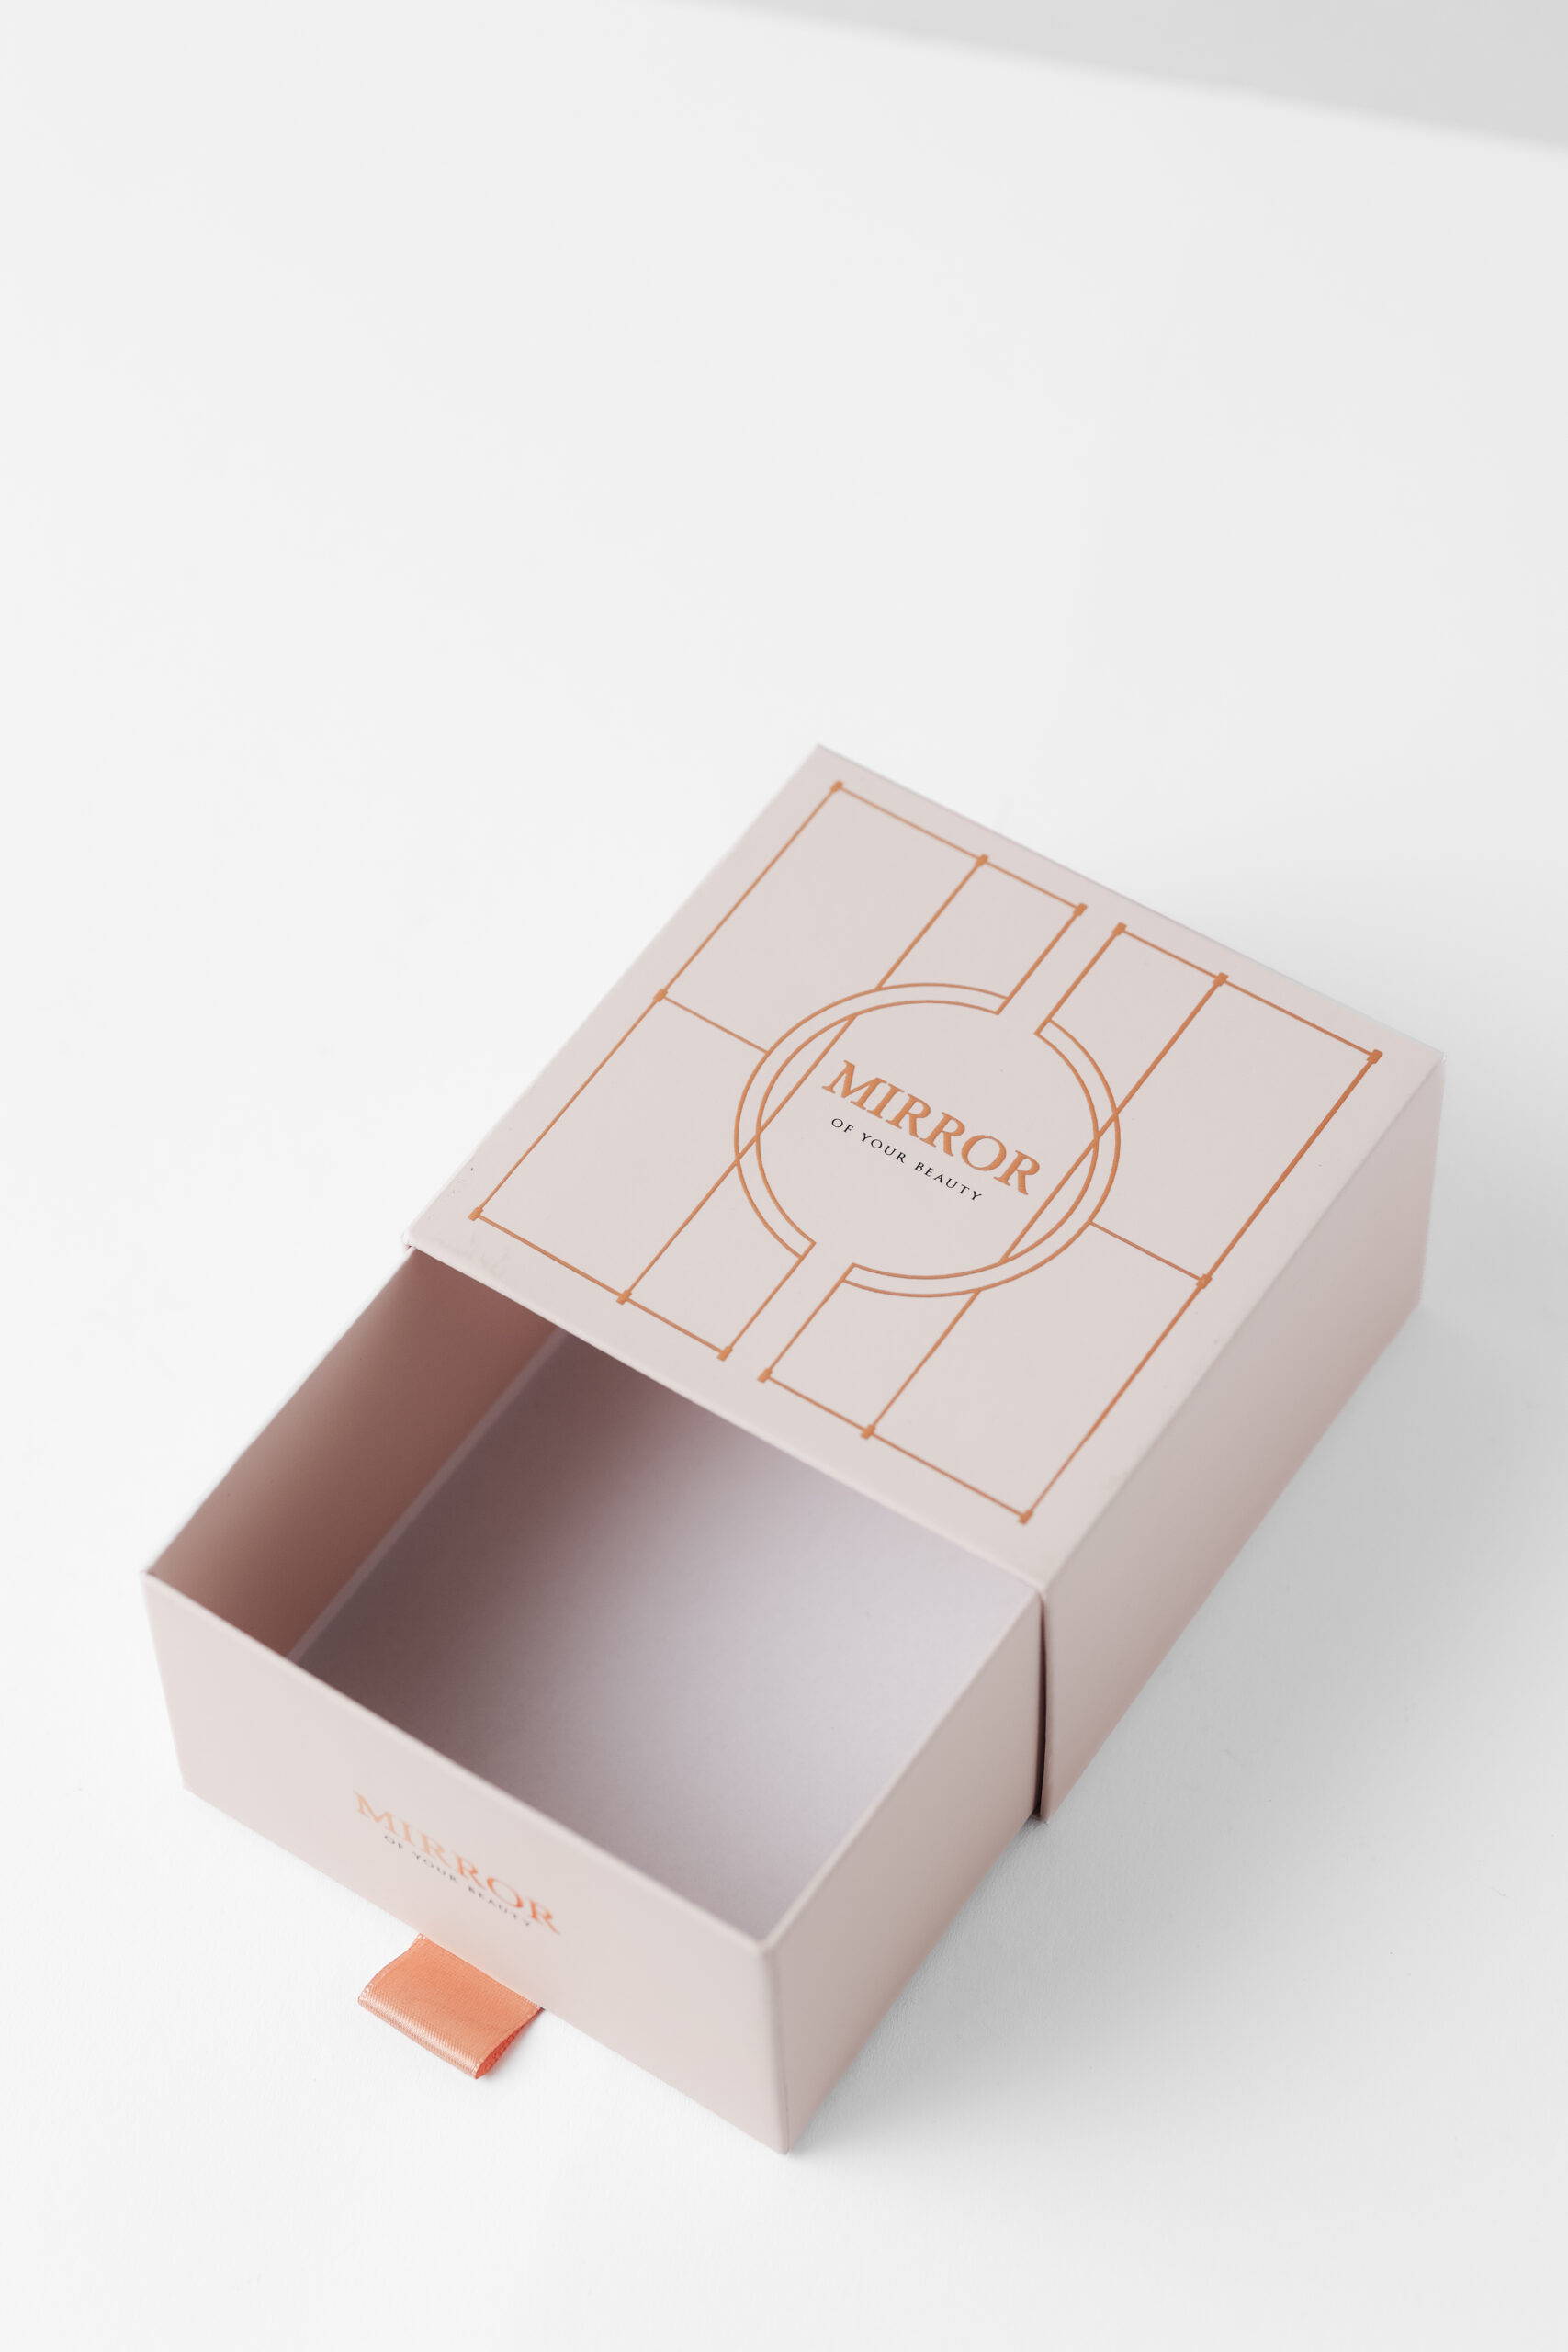 Schachtel mit Schuber und Prägung als Produktverpackung für das Unternehmen Mirror, vom Druckveredeler Achilles